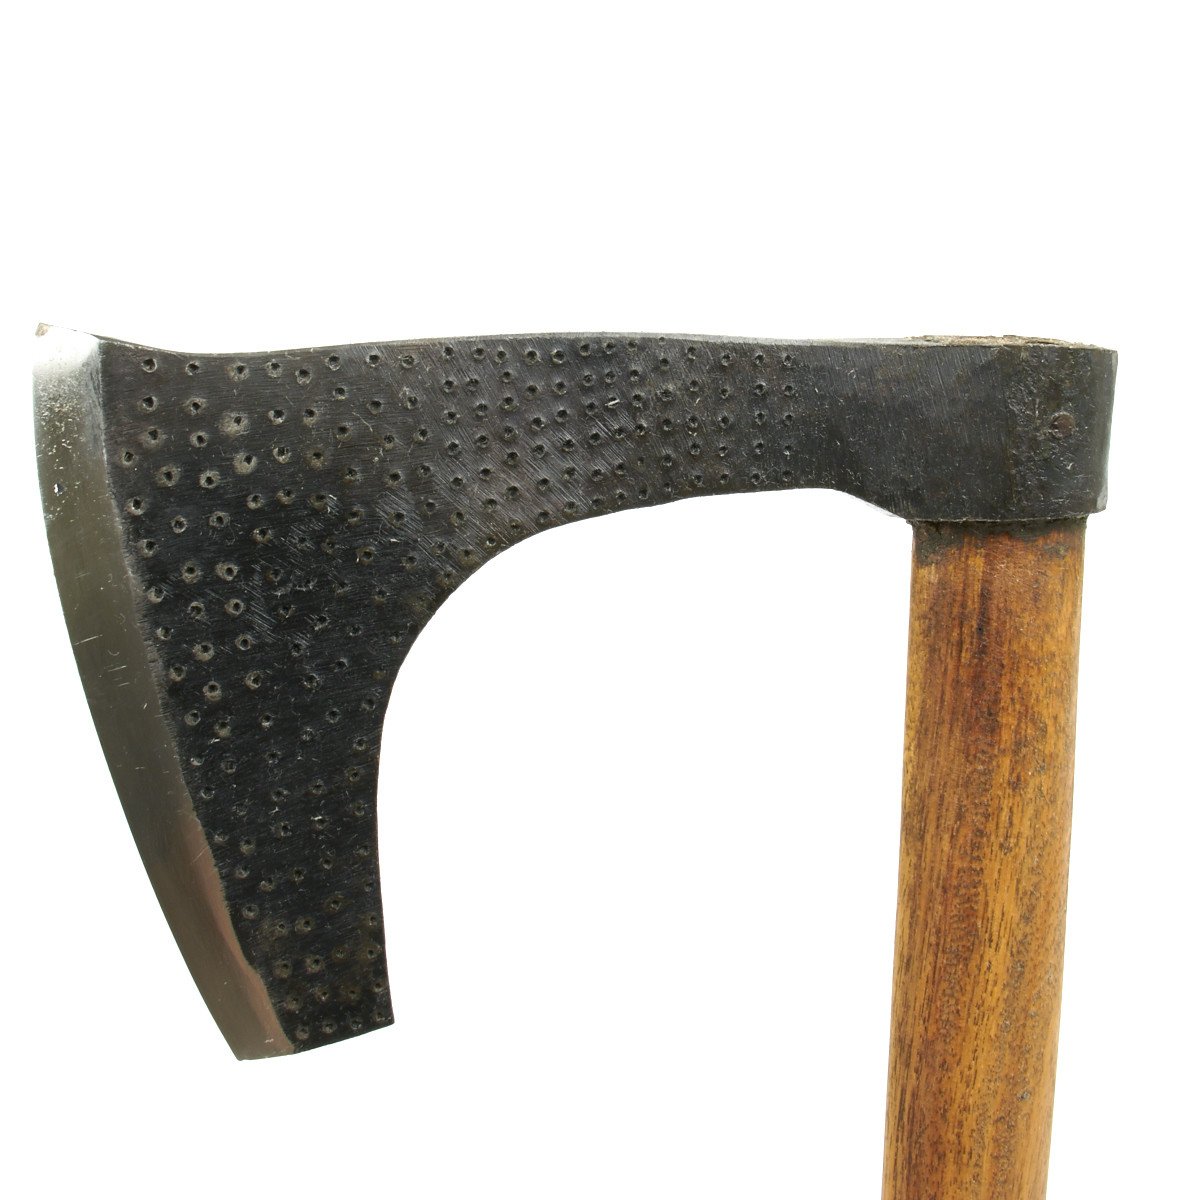 bearded battle axe